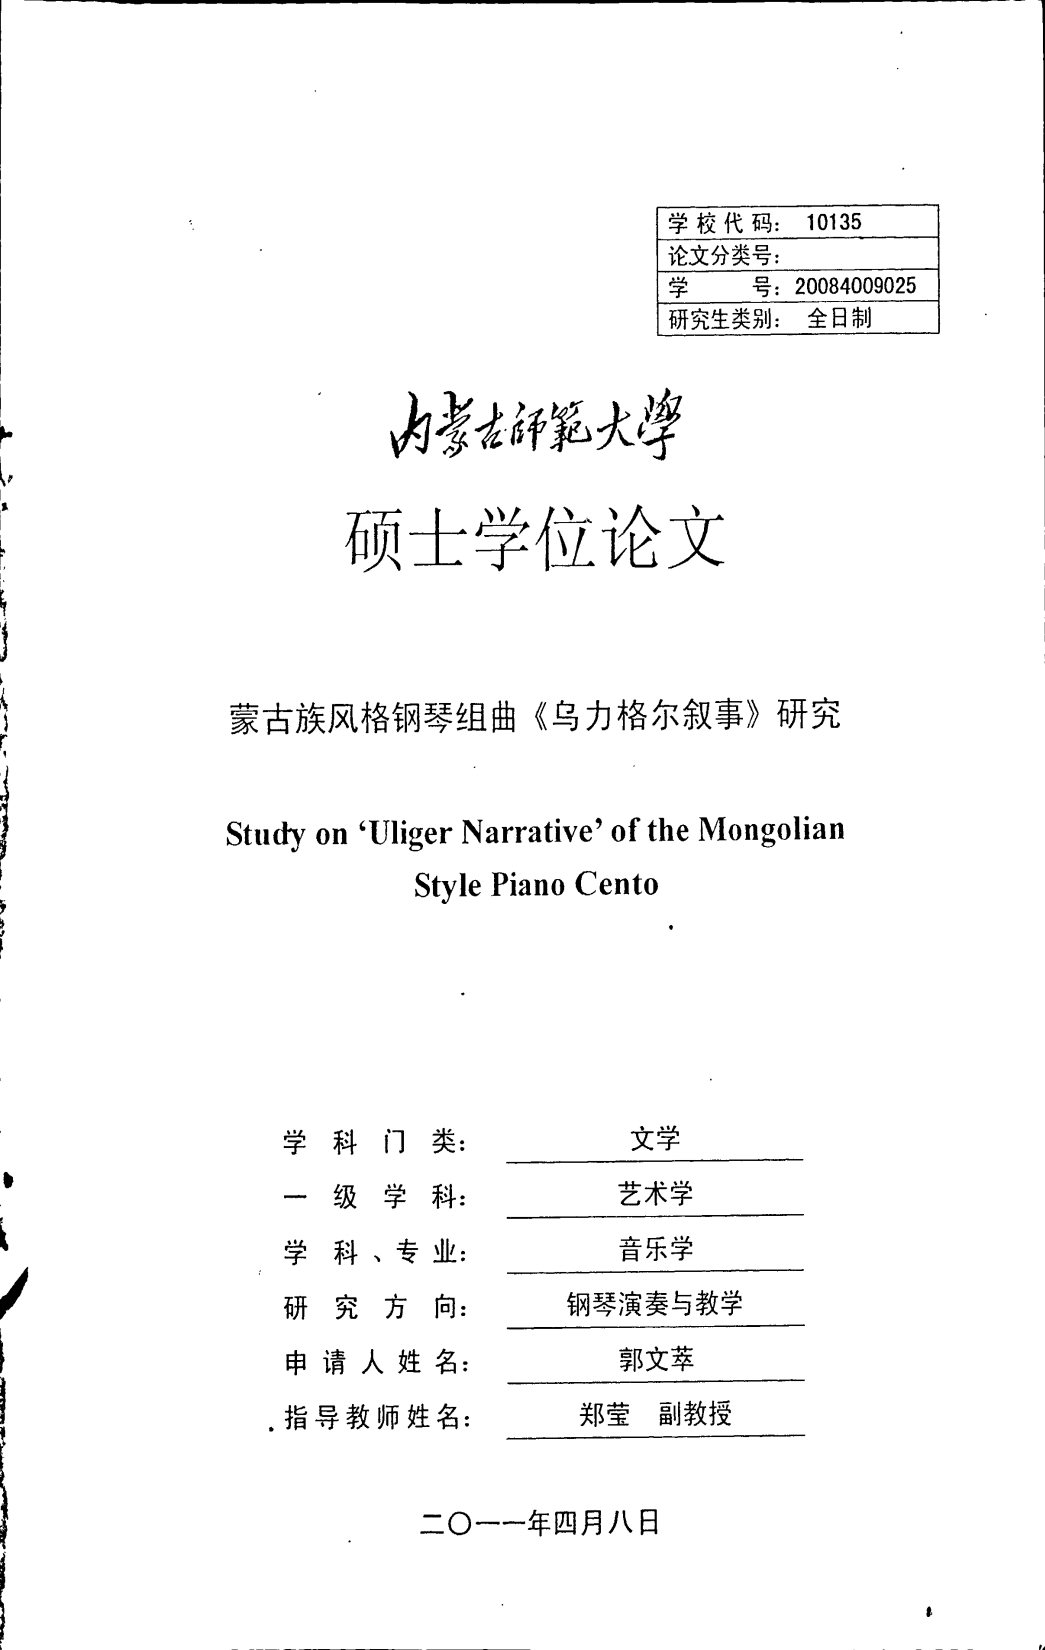 蒙古族风格钢琴组曲《乌力格尔叙事》研究_第1页